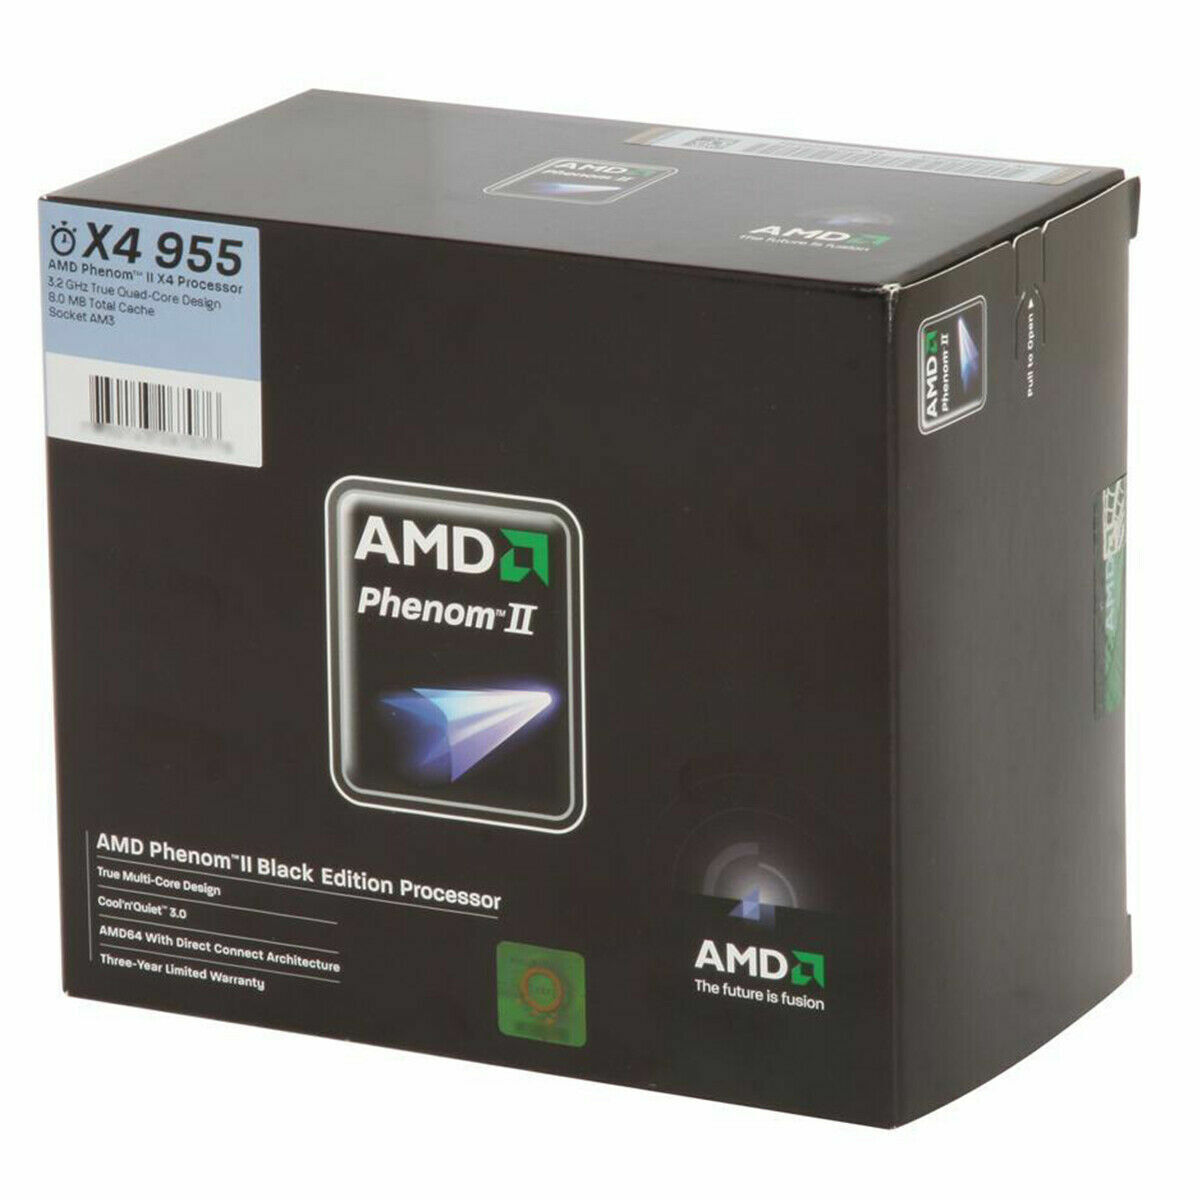 AMD Phenom II X4 955 Black Edition Quad-Core 3.2 GHz Socket AM3 125W Processor